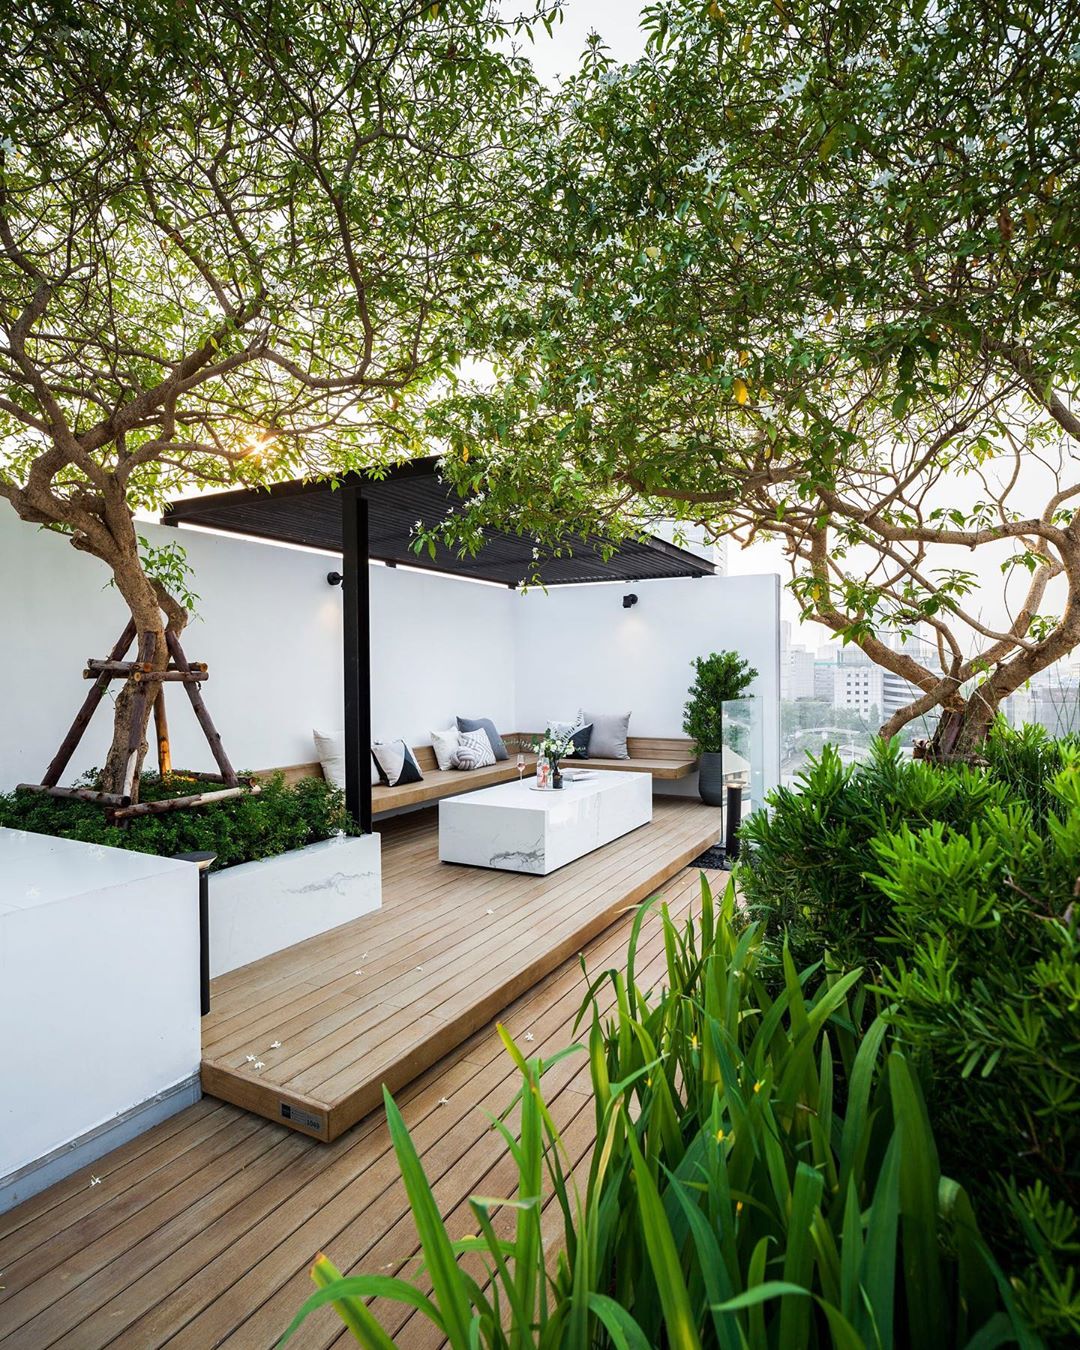 原创玩转庭院:11个"木平台"设计,将院子打造成高品质休闲空间